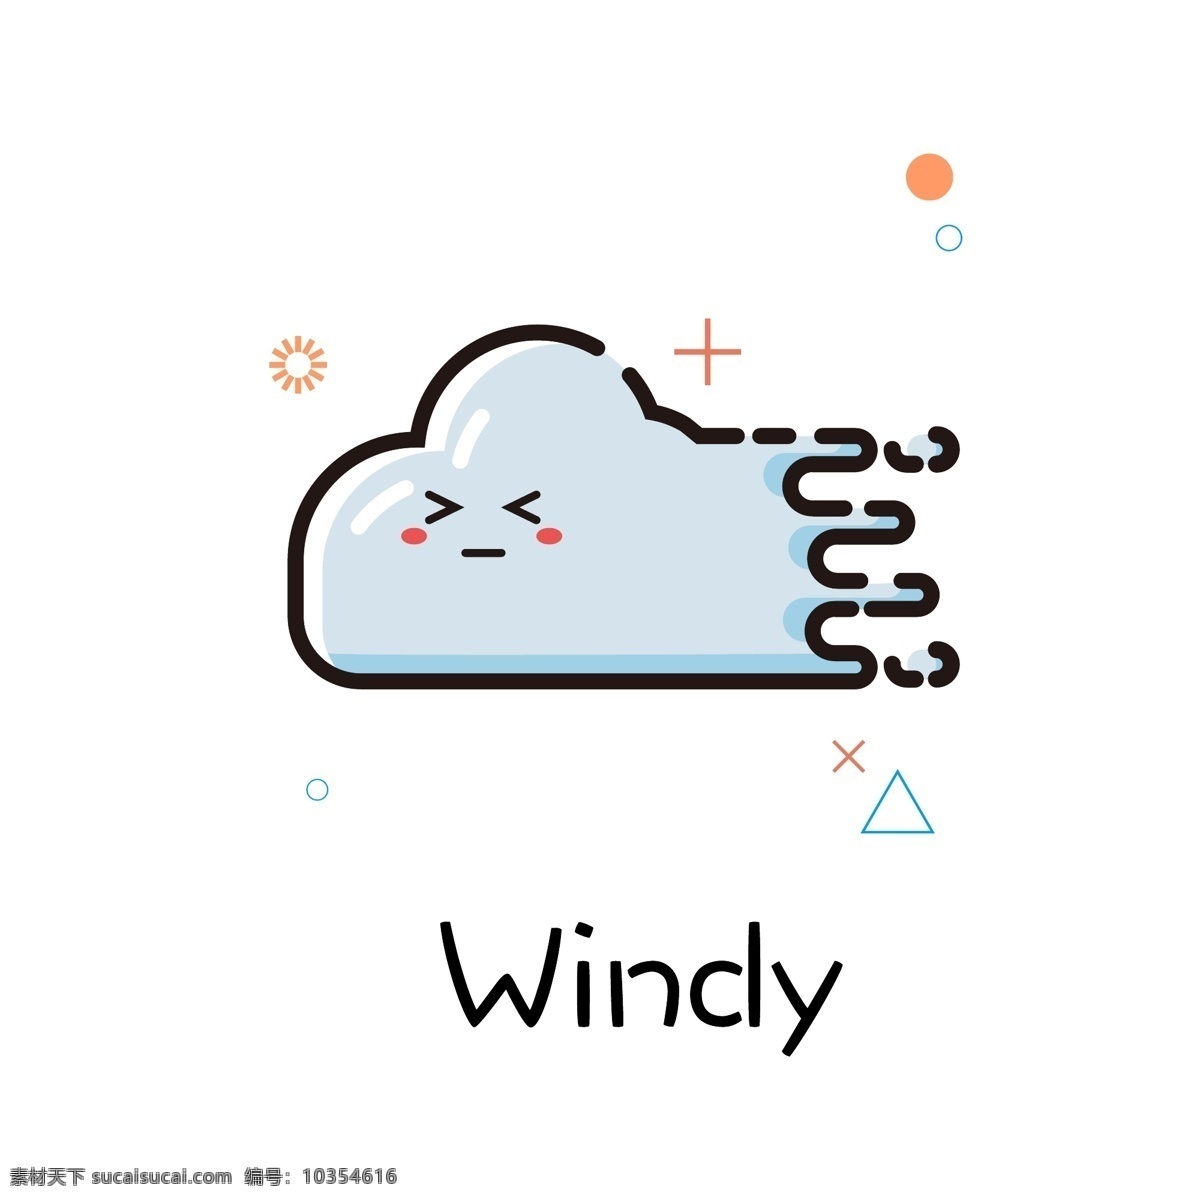 天气 风 mbe 图标 手绘 商用 元素 矢量 可爱 起风 刮风 大风 手账 可编辑 海报